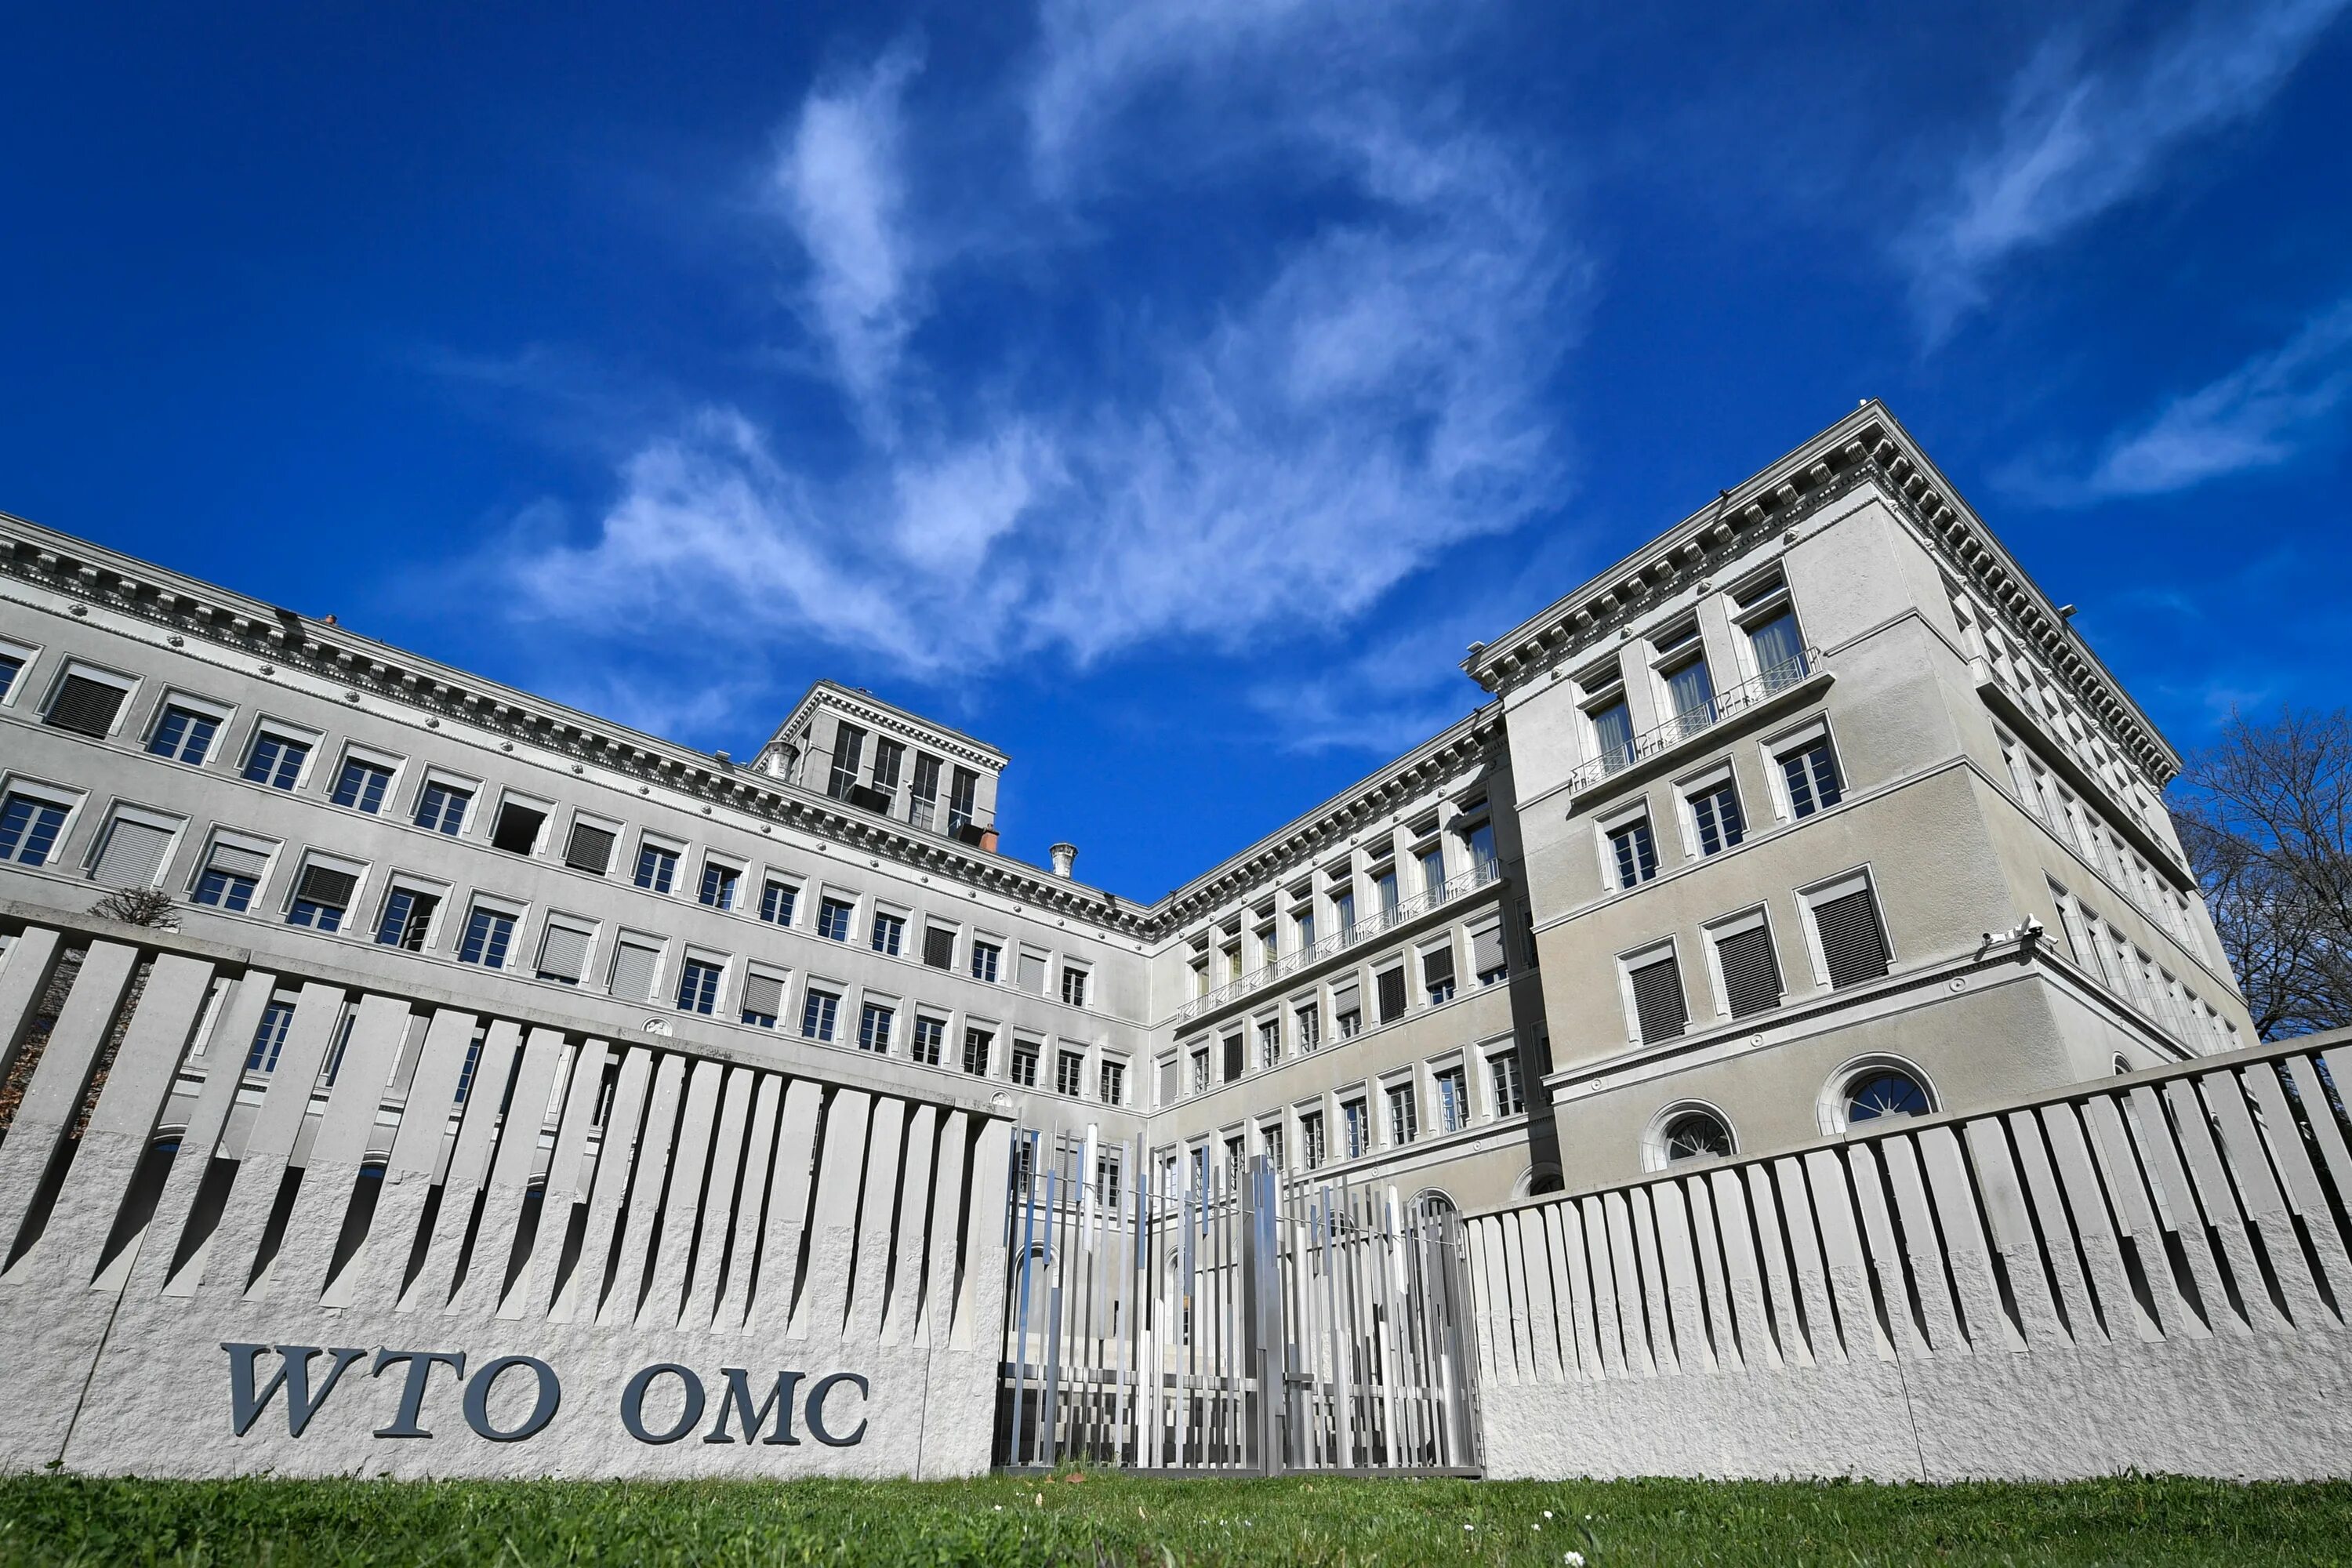 Вто оон. Штаб квартира ВТО В Женеве. Здание ВТО Женева. ВТО Женева Швейцария. Штаб-квартира ВТО расположена в Женеве, Швейцария.